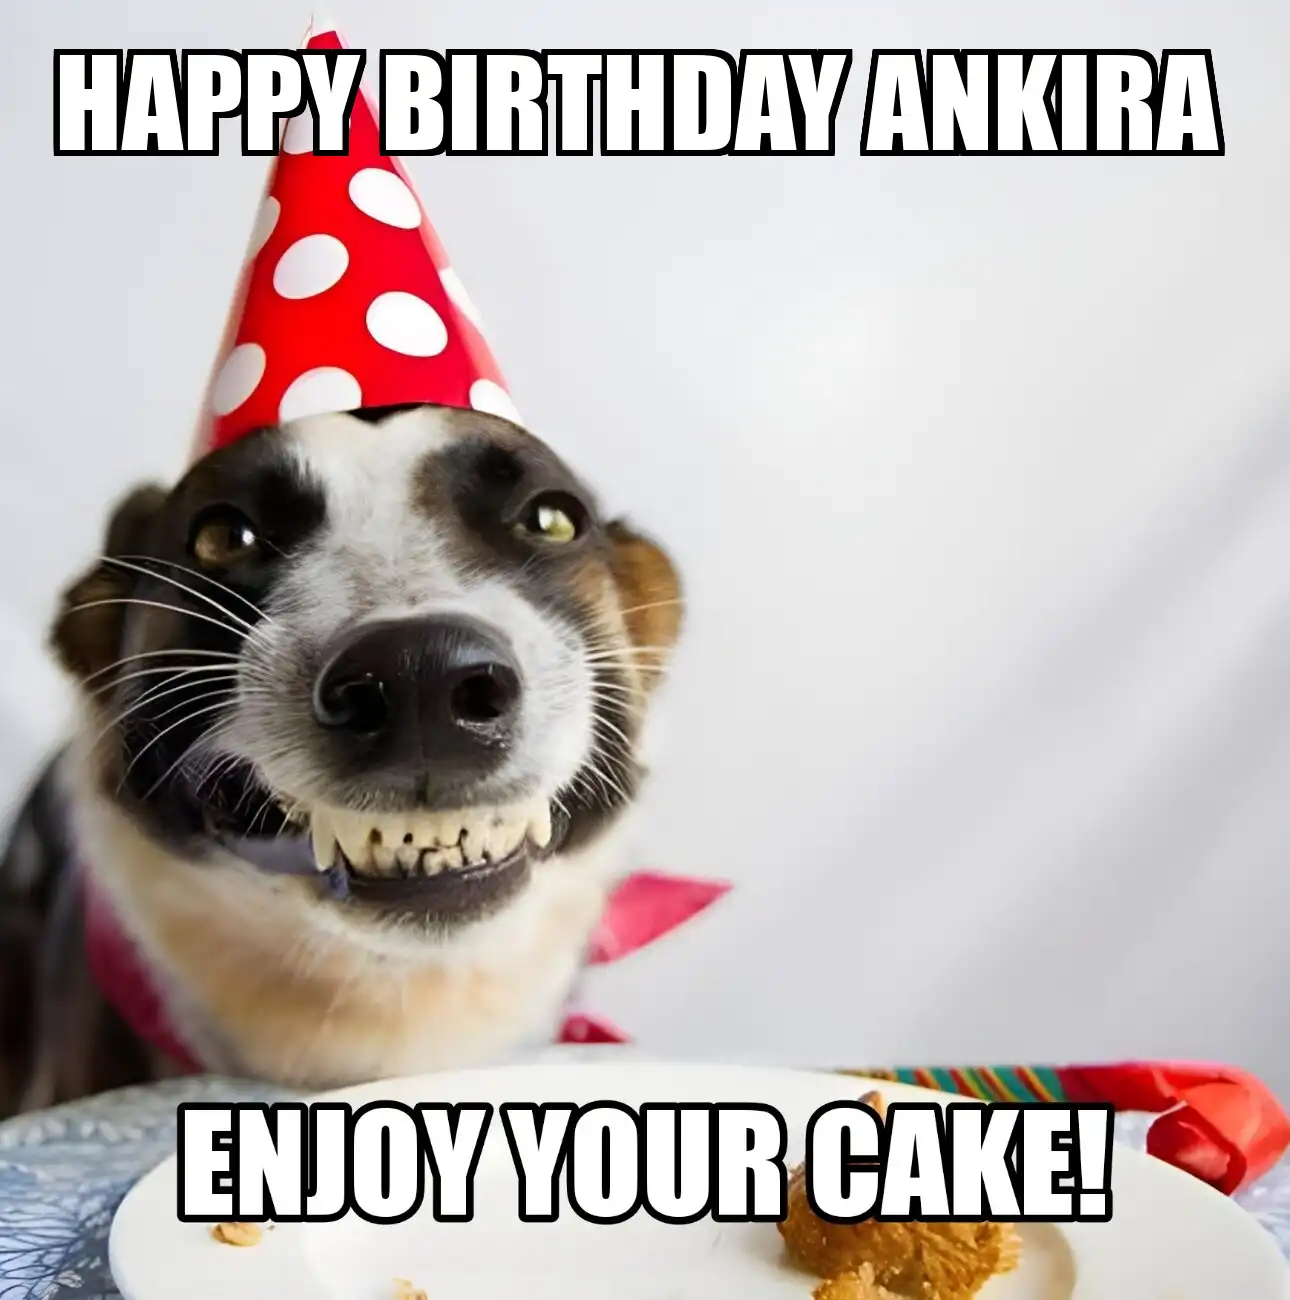 Happy Birthday Ankira Enjoy Your Cake Dog Meme